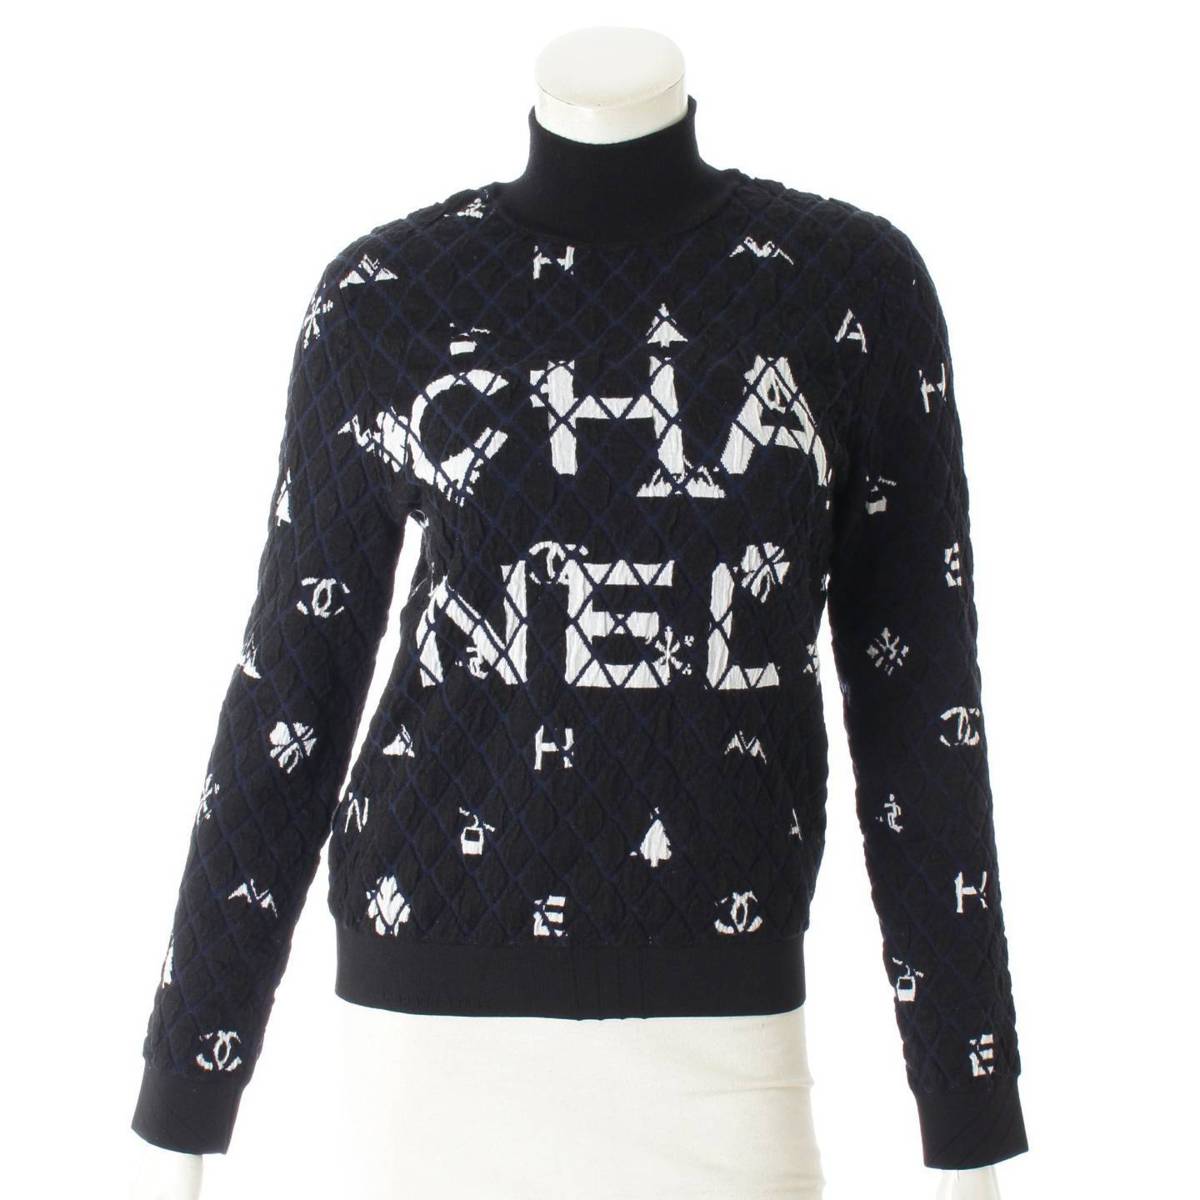 シャネル(Chanel) カラー抜けココネージュ プルオーバー カシミヤ ウール ニット セーター P62162 36